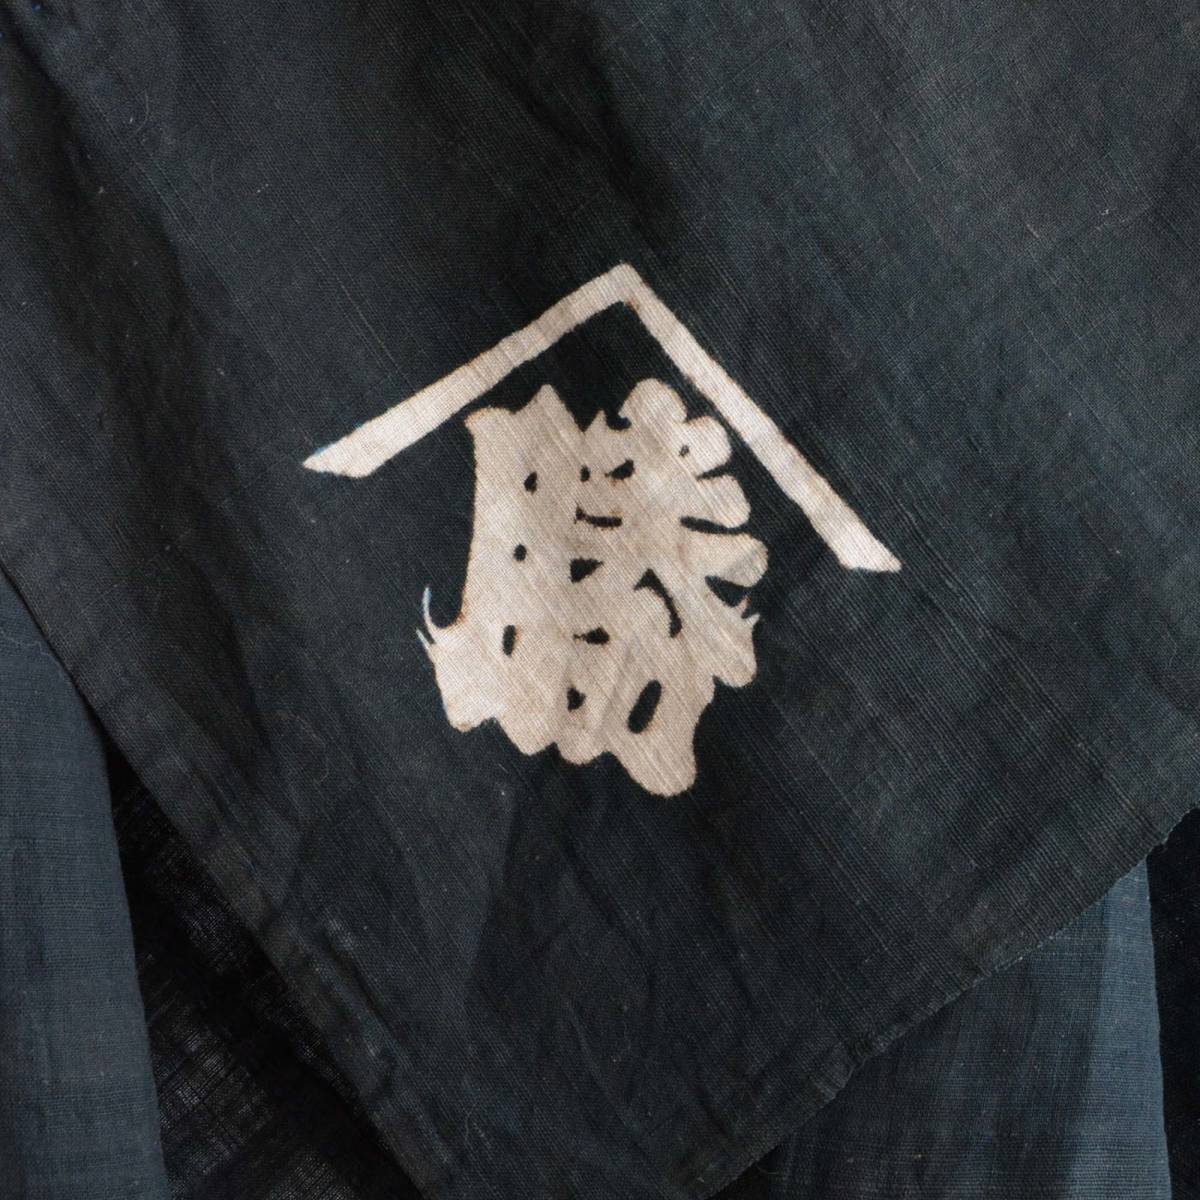 人気商品は 木綿 古布 黒 Cloth Wrap Furoshiki Black Cotton Vintage Fabric Japanese 大正 テキスタイル ファブリック ジャパンヴィンテージ 風呂敷 風呂敷